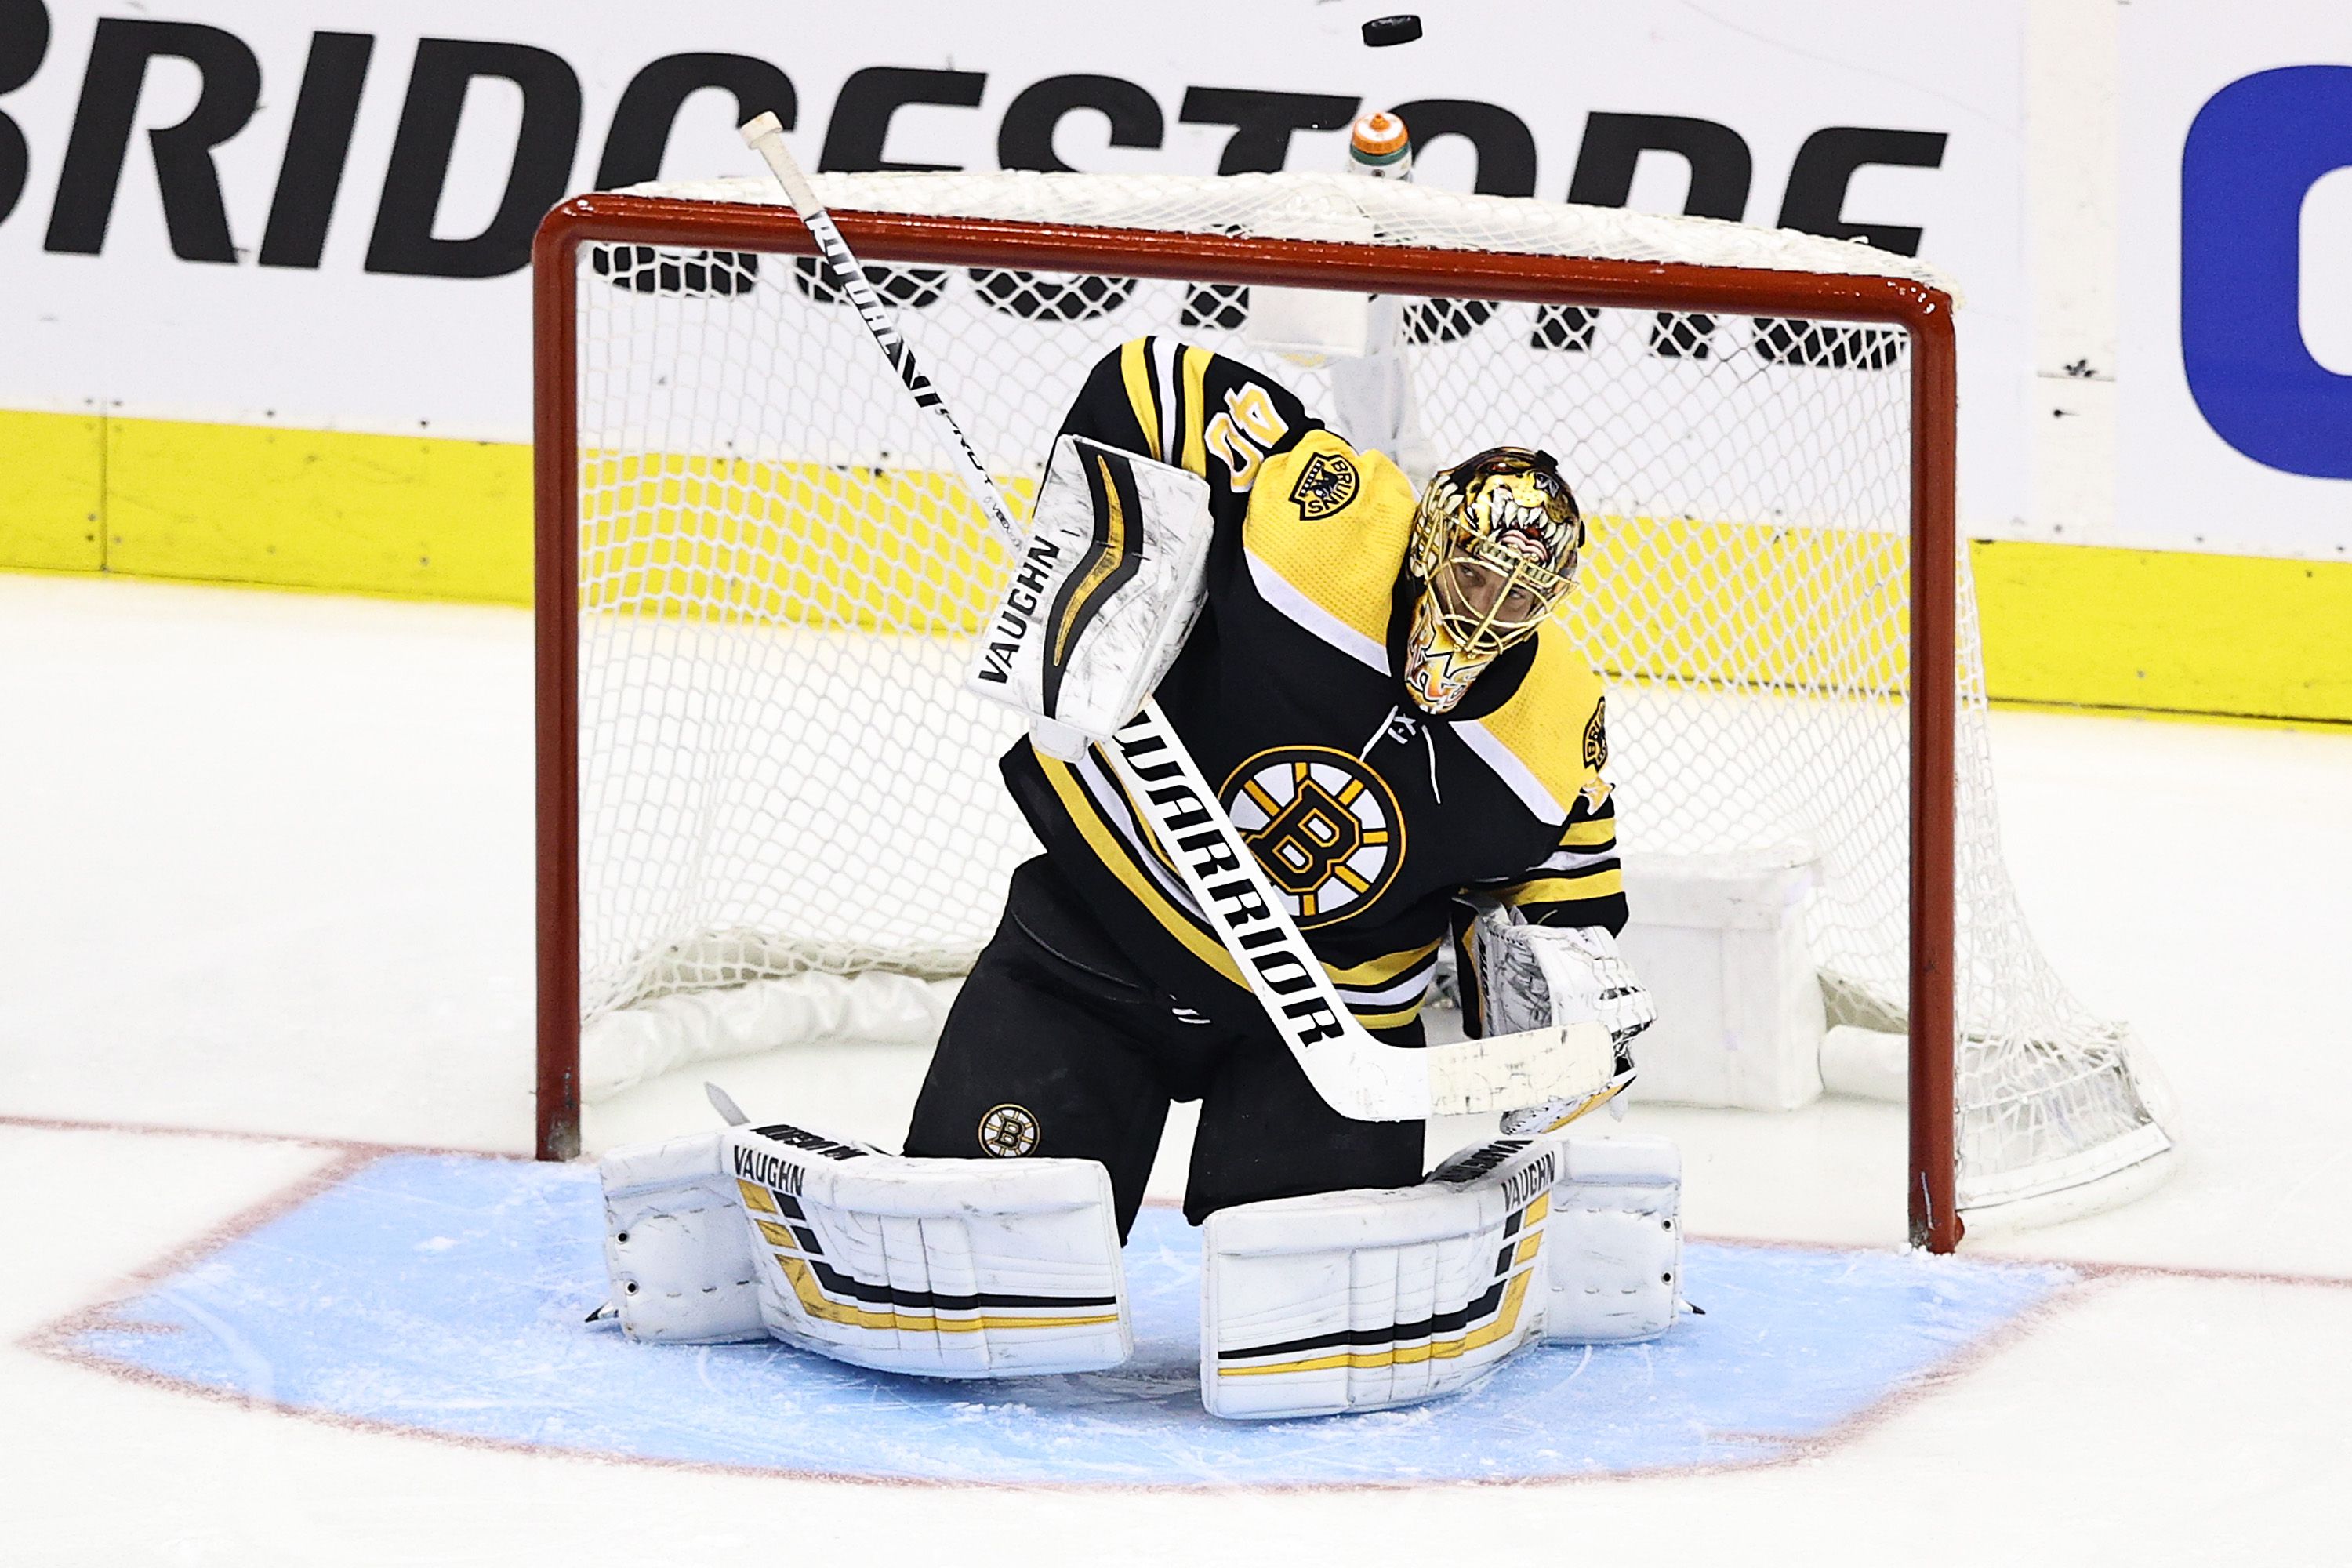 Boston Bruins goalie Tuukka Rask looks to rebound from difficult